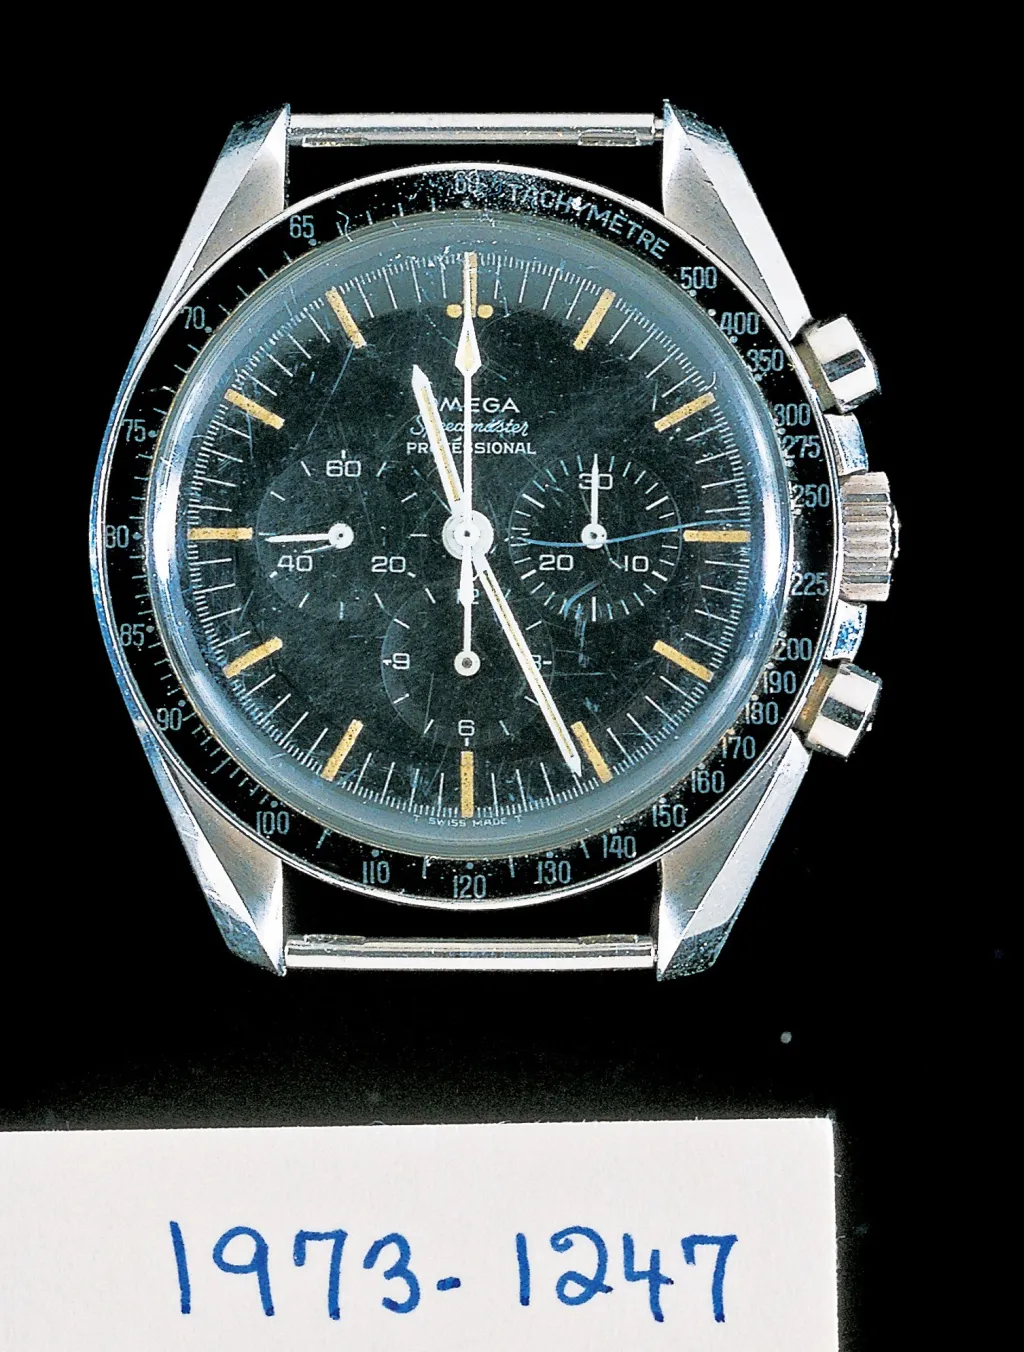 Po sérii přísných testů se prokázala vysoká úroveň, přesnost a spolehlivost chronografu Omega Speedmaster, který byl vybrán NASA pro americký kosmický program v roce 1964. Požadavky programu vyžadovaly ručně natahovací chronograf, který musel být vodotěsný, odolný proti nárazům, antimagnetický, schopný odolat teplotám od 0 do 200 stupňů a vydržet přetížení 12 G. Tyto konkrétní hodinky měl na ruce Neil Armstrong během celého letu